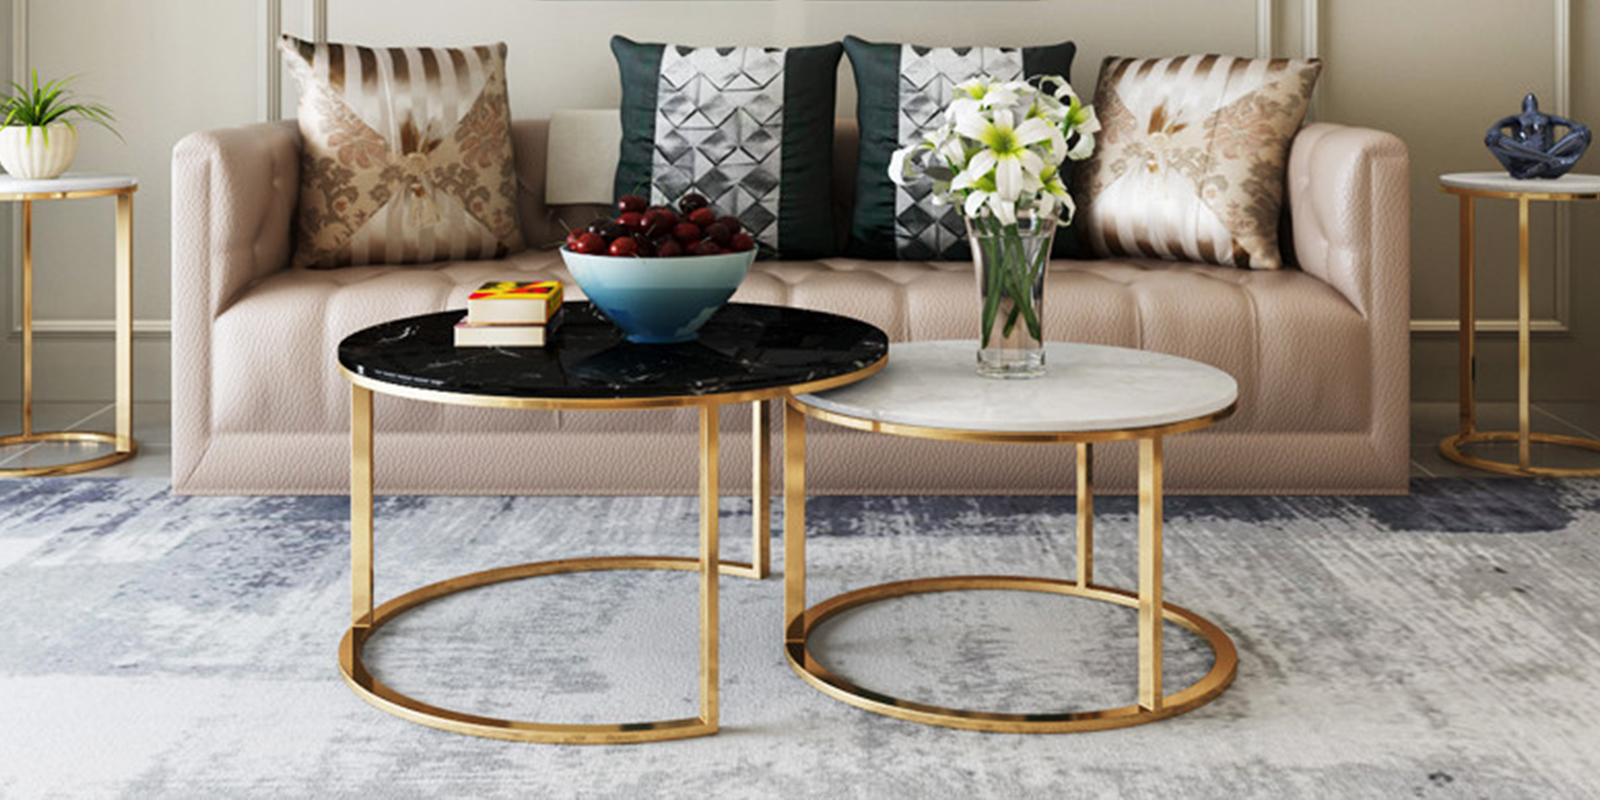 โต๊ะกลางห้องรับแขกหินอ่อนชุด 2 ตัว - Marble Coffee Table Set